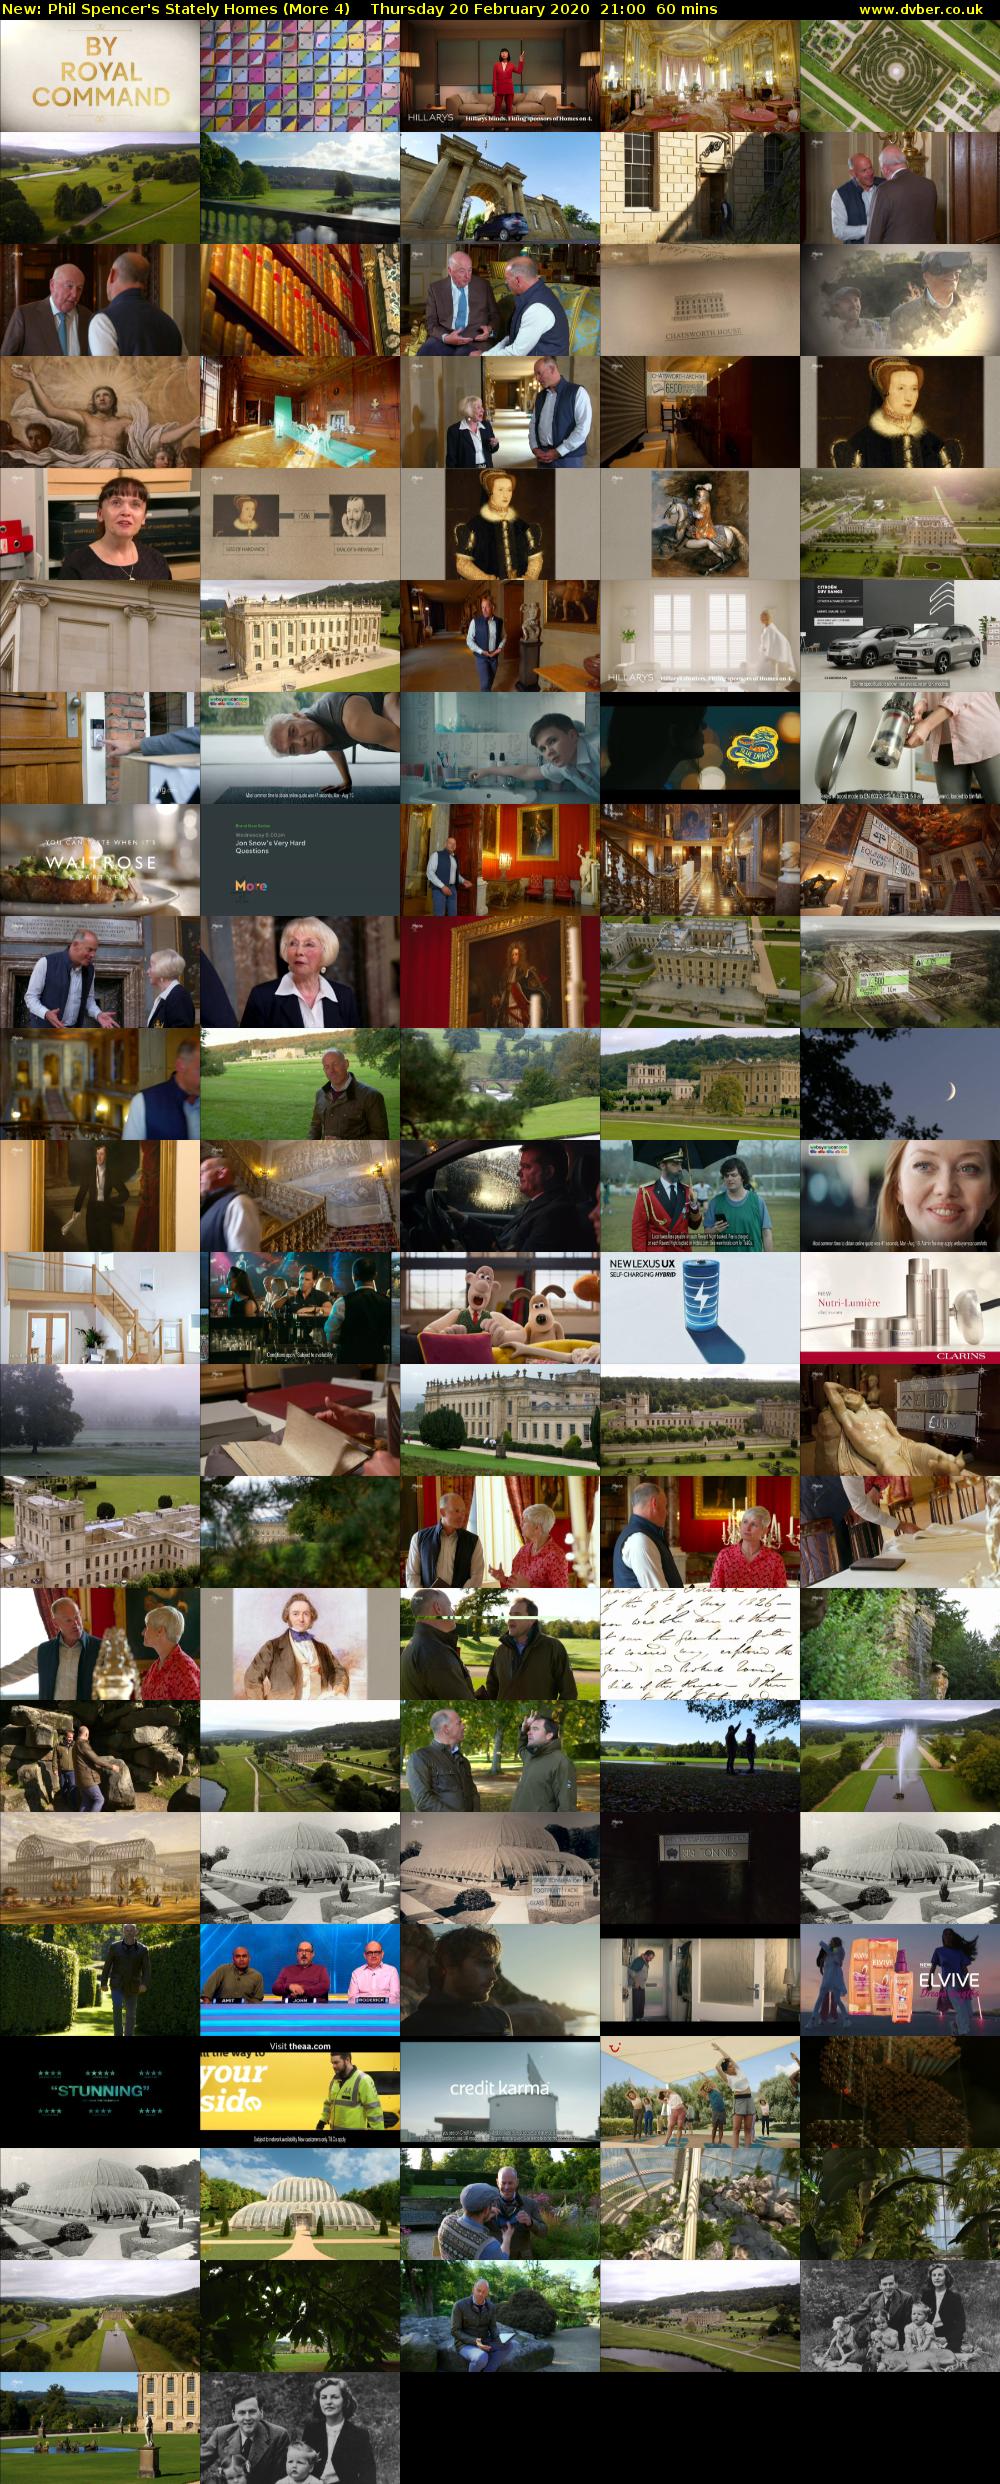 Phil Spencer's Stately Homes (More 4) Thursday 20 February 2020 21:00 - 22:00